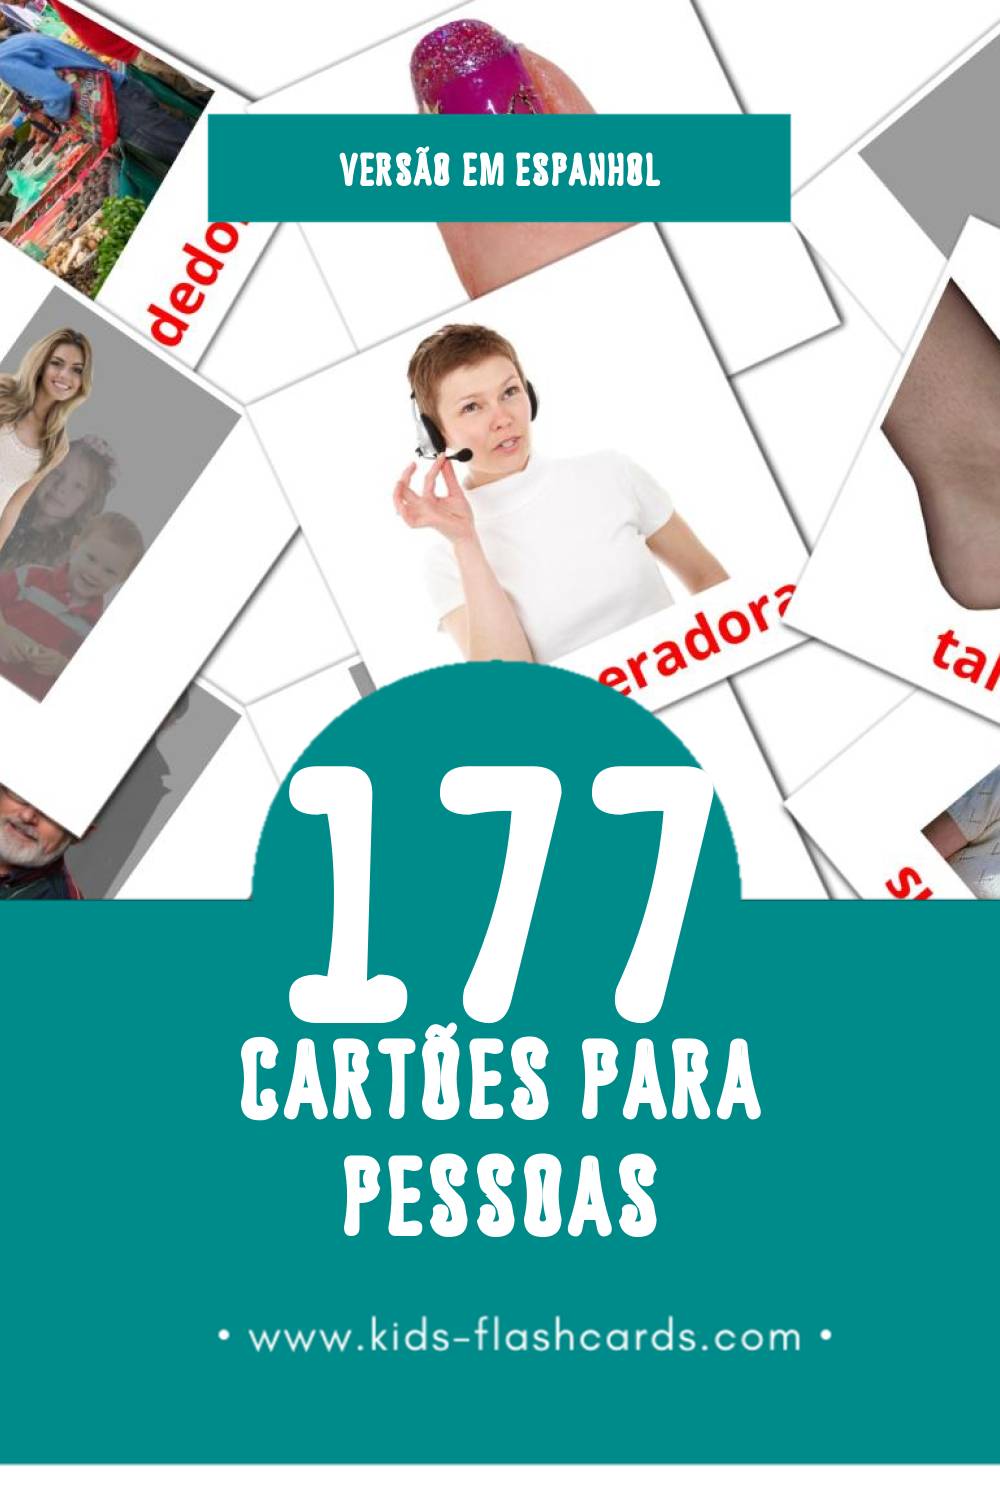 Flashcards de Personas Visuais para Toddlers (177 cartões em Espanhol)